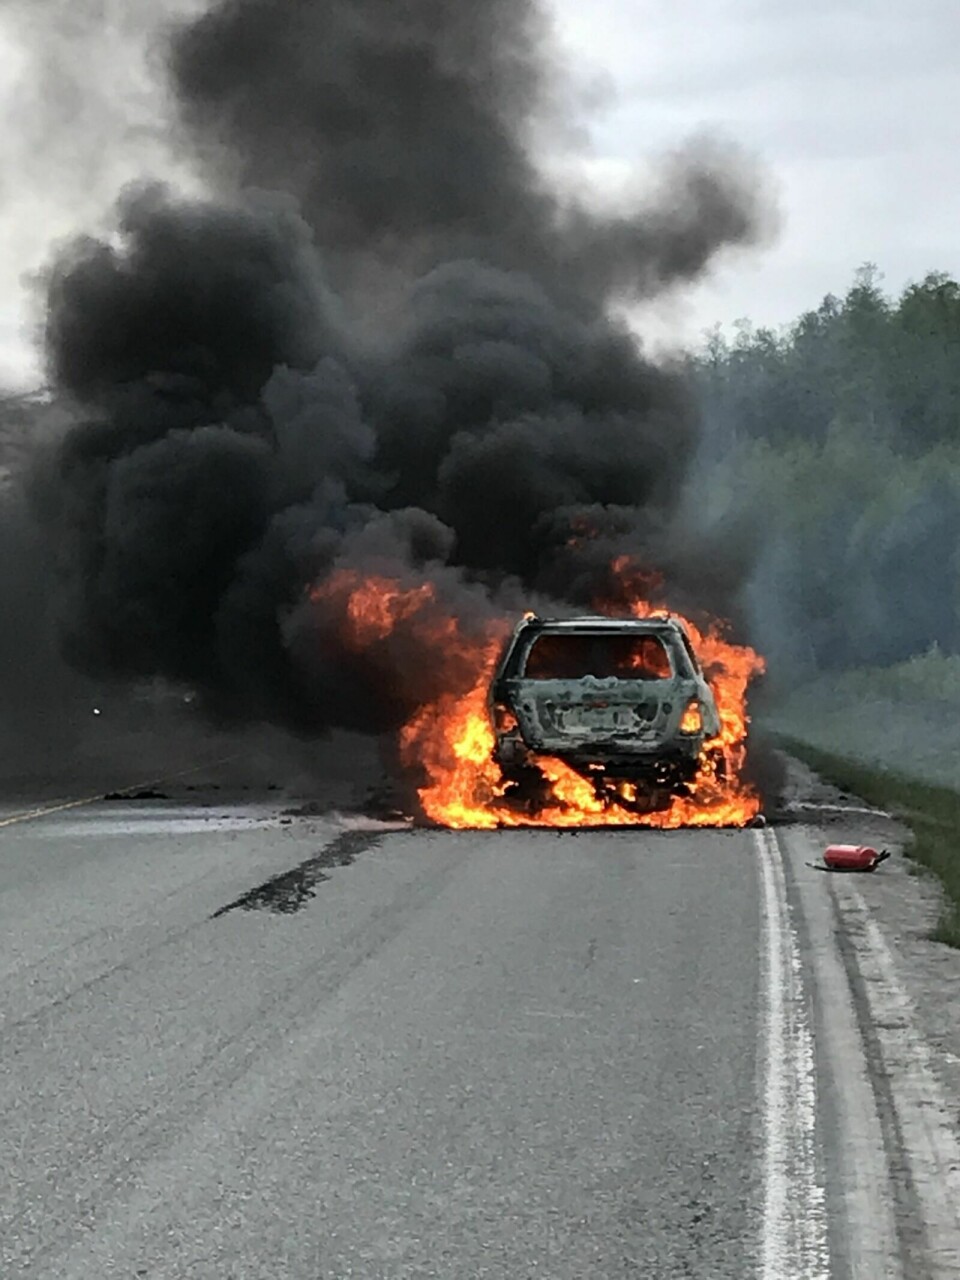 VED STRUPHØGDA: Det var ikke mulig å passere på stedet, da bilen brant kraftig. Foto: Leif A. Stensland